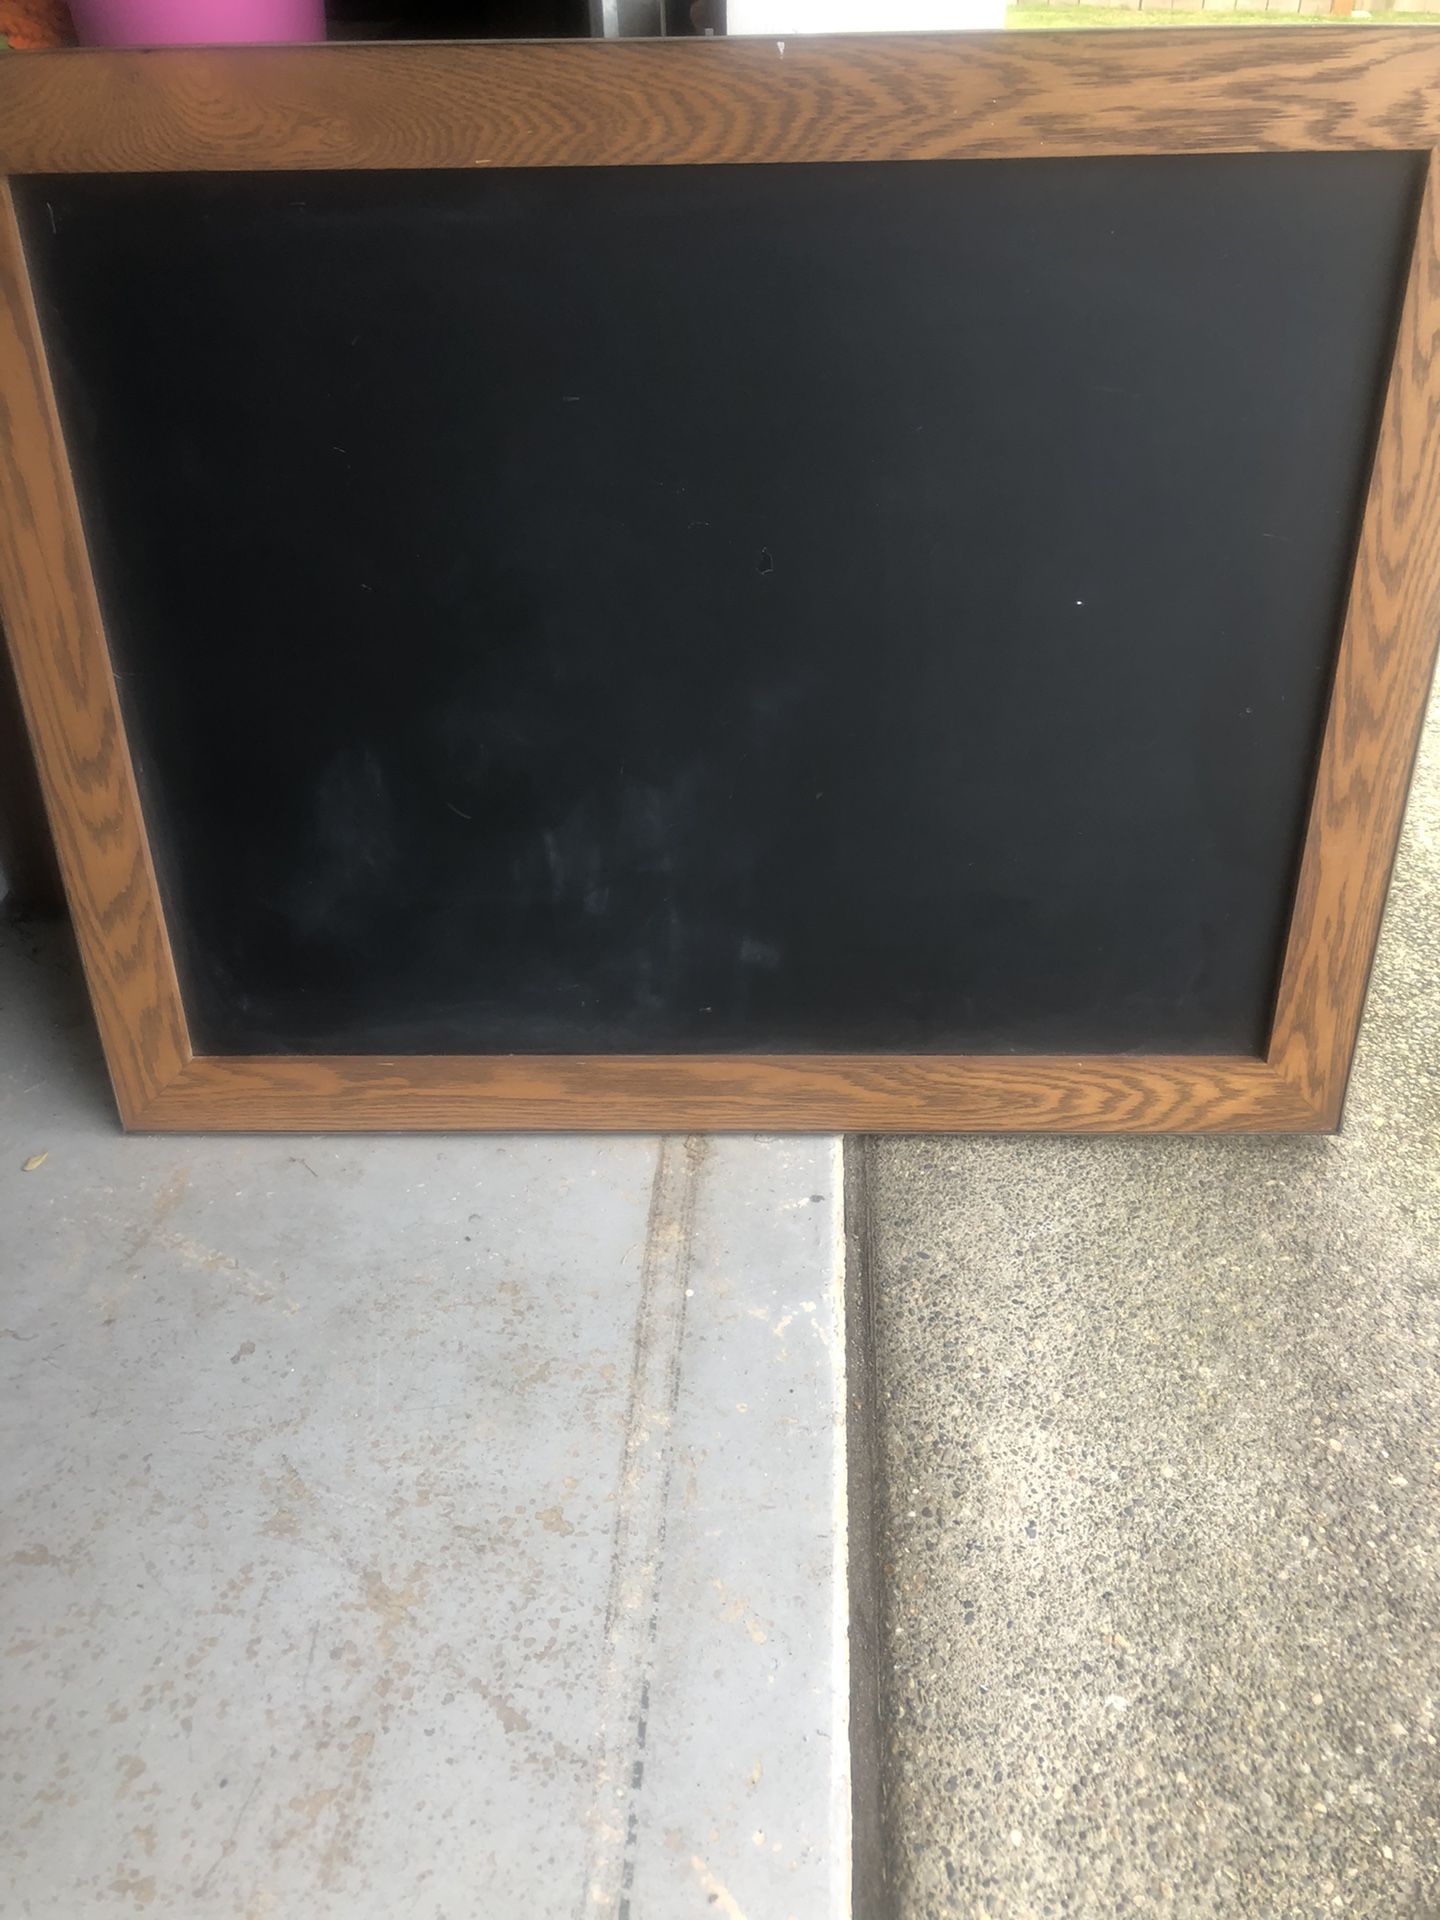 Chalkboard 